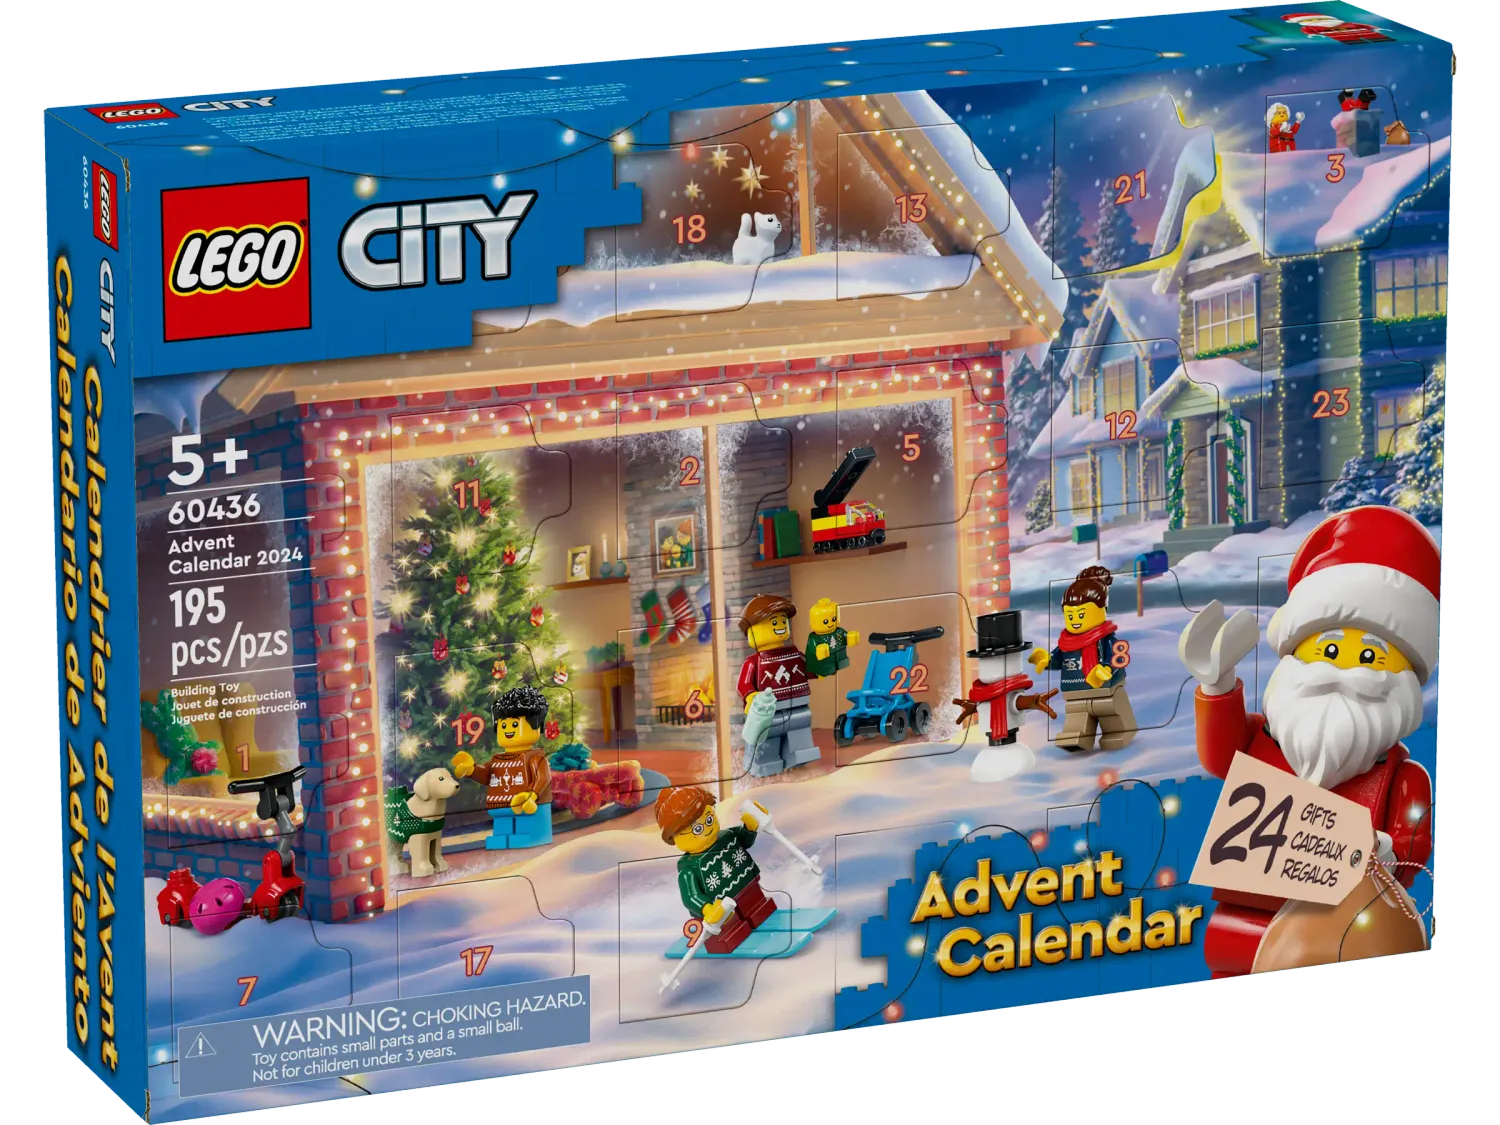 LEGO City 60436 - Advent Calendar 2024